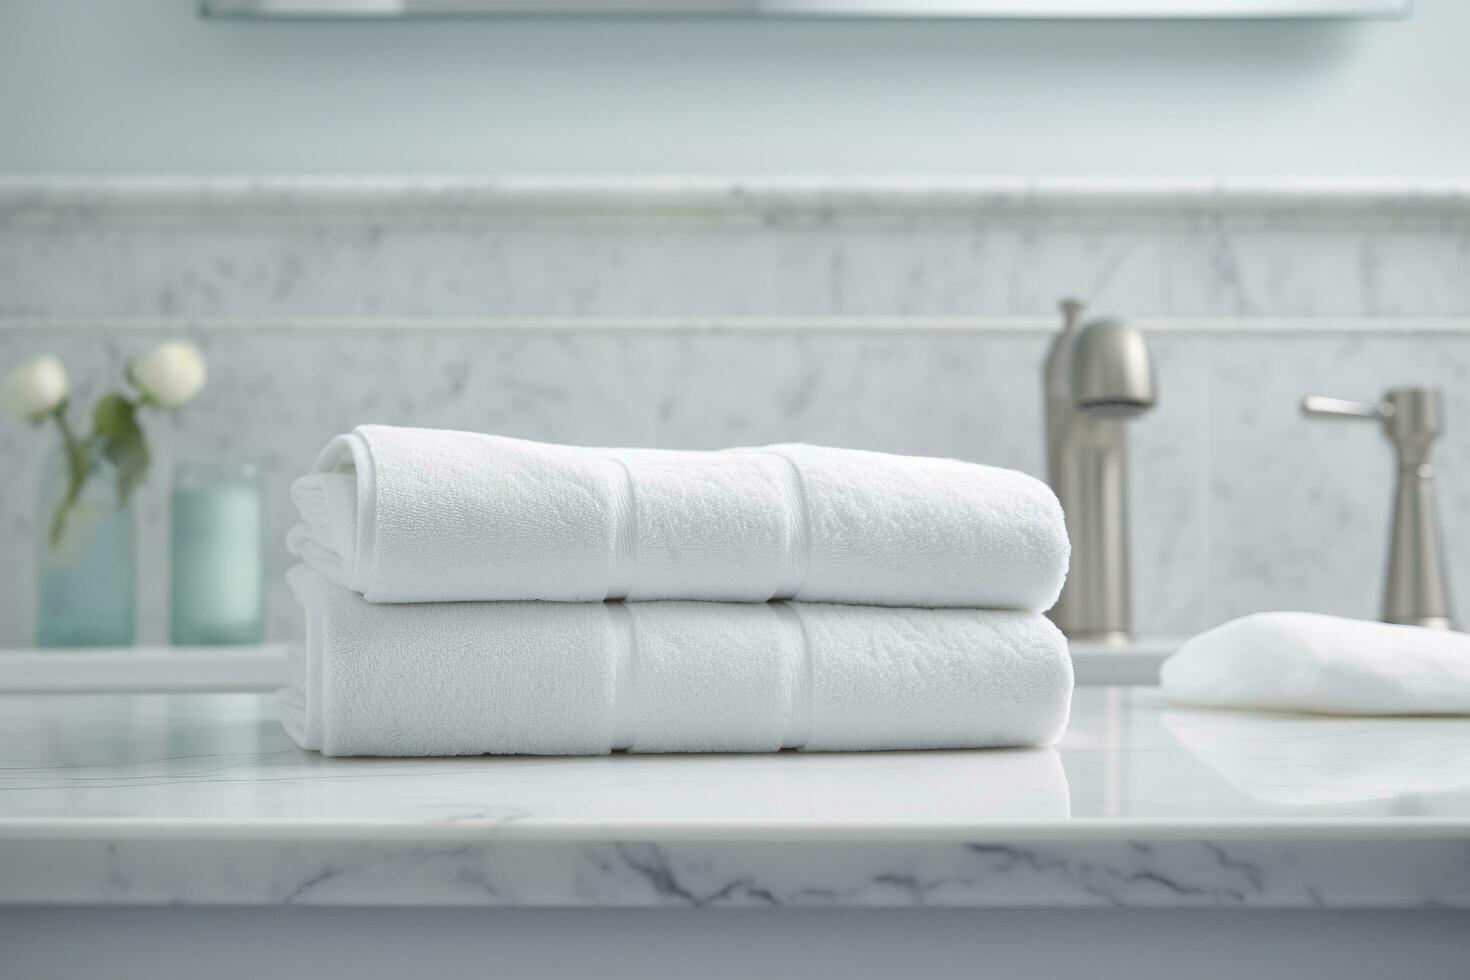 das Welt am weichsten Handtücher gegen ein minimalistisch Hintergrund. gestapelt Weiß Handtücher sitzen auf oben von ein Seife Gericht im ein Badezimmer. ai generativ foto